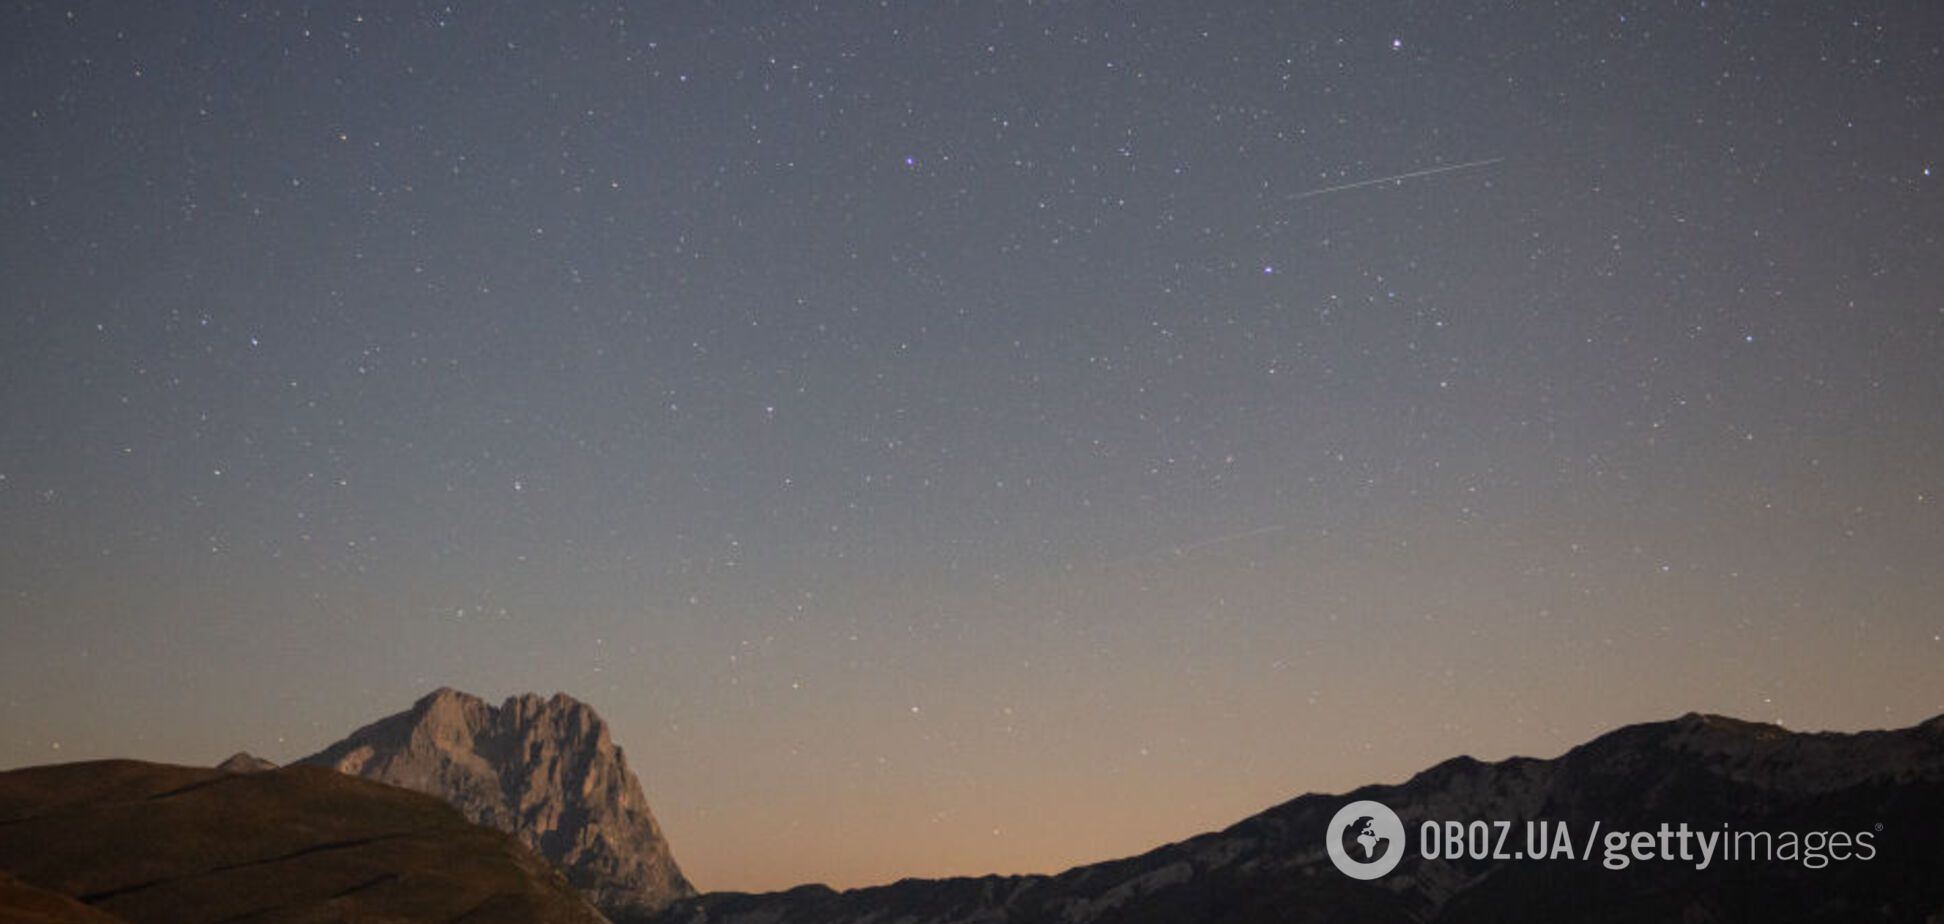 Метеорный поток Персеиды достиг пика: яркие фото и видео звездопада